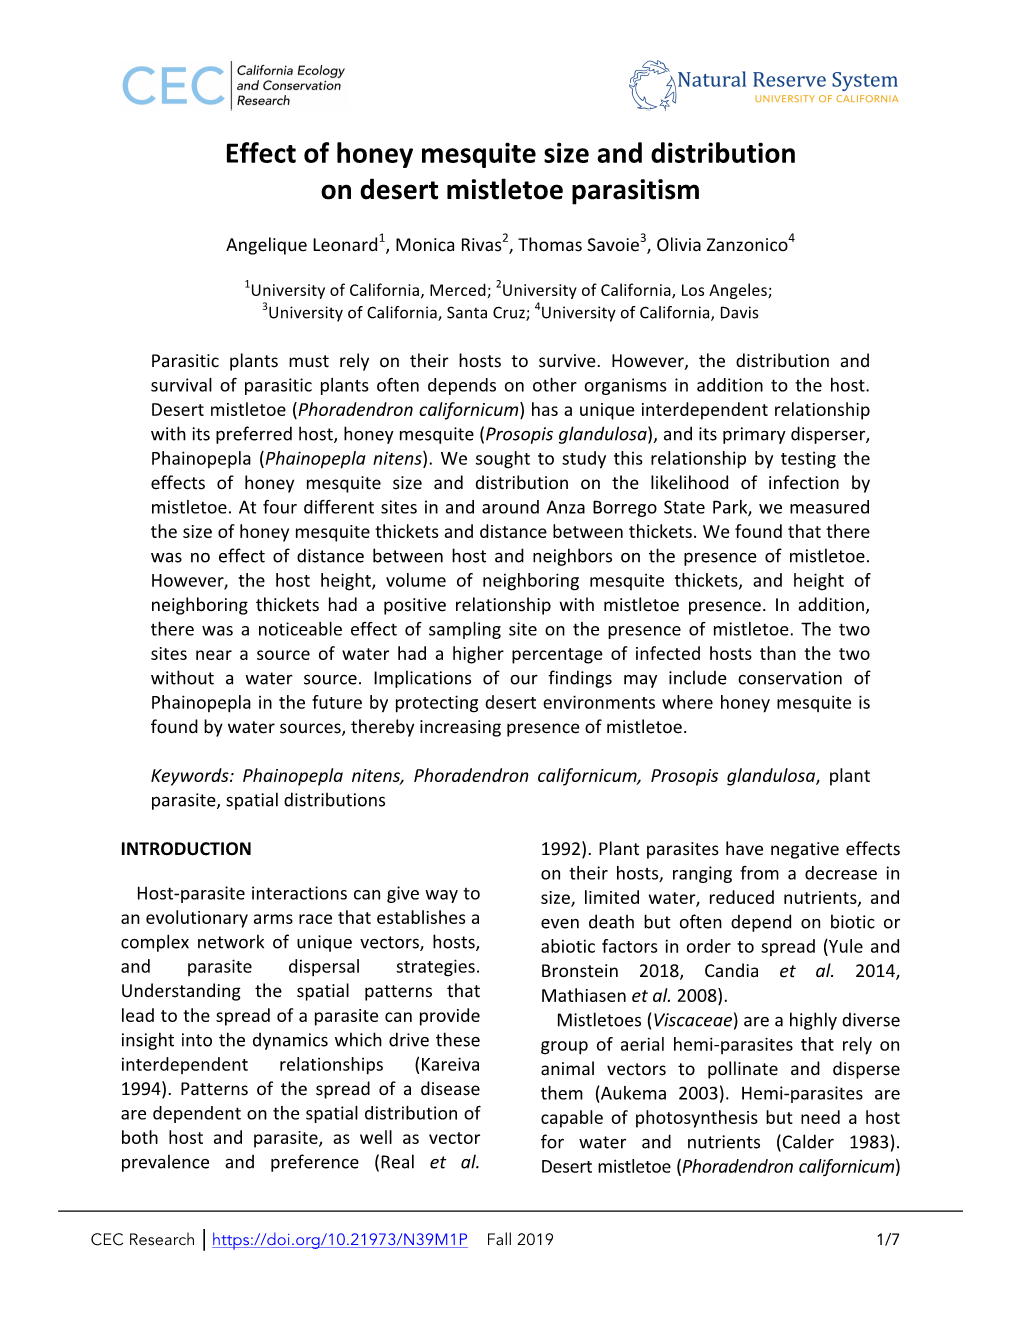 Effect of Honey Mesquite Size and Distribution on Desert Mistletoe Parasitism